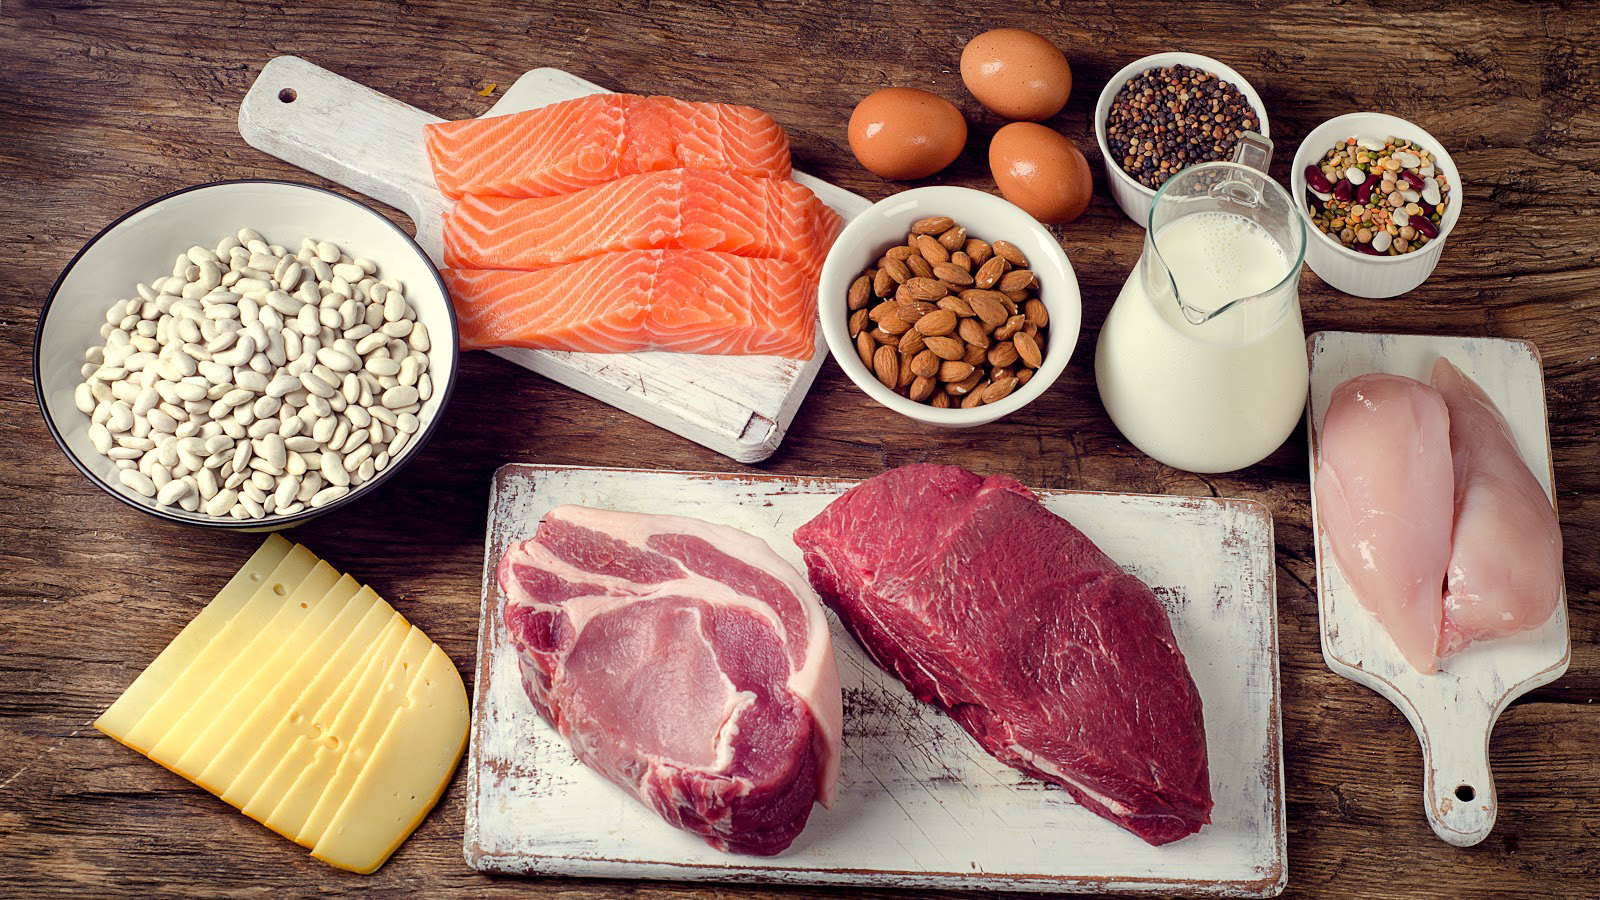 Πρωτεΐνη: Τα σημάδια που δείχνουν ότι τρώτε περισσότερη απ’ όση χρειάζεστε